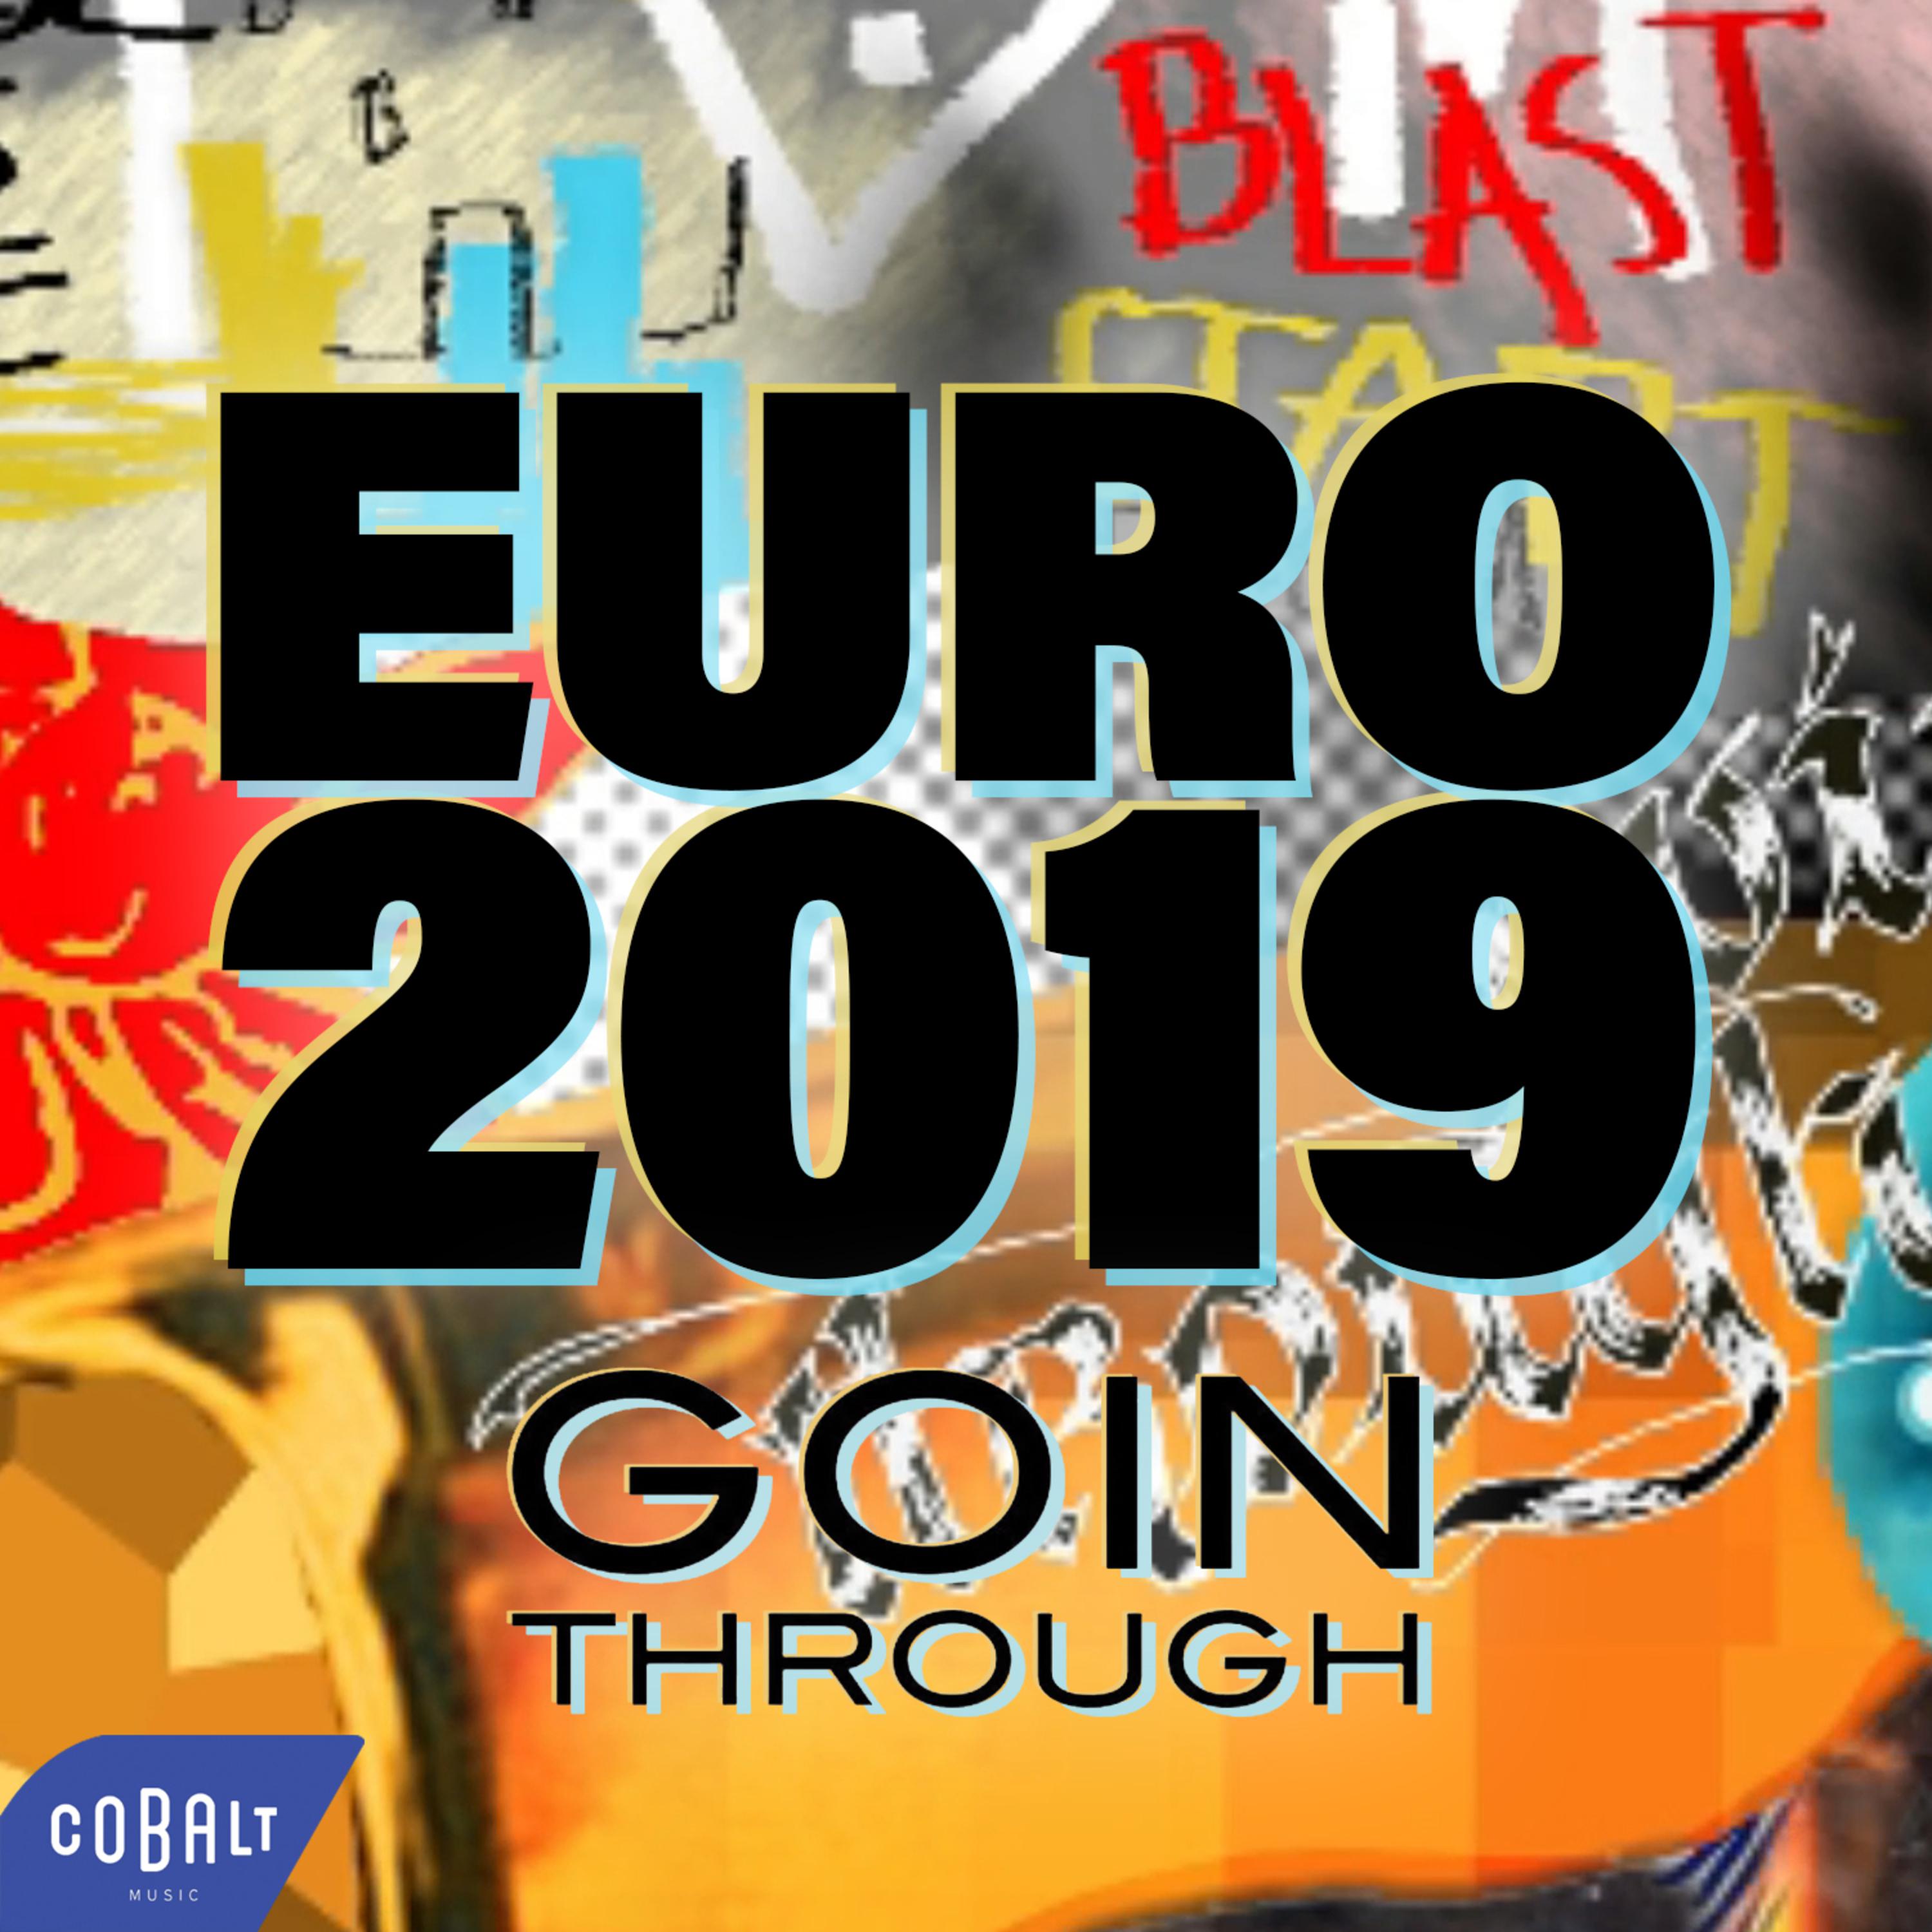 EURO 2019